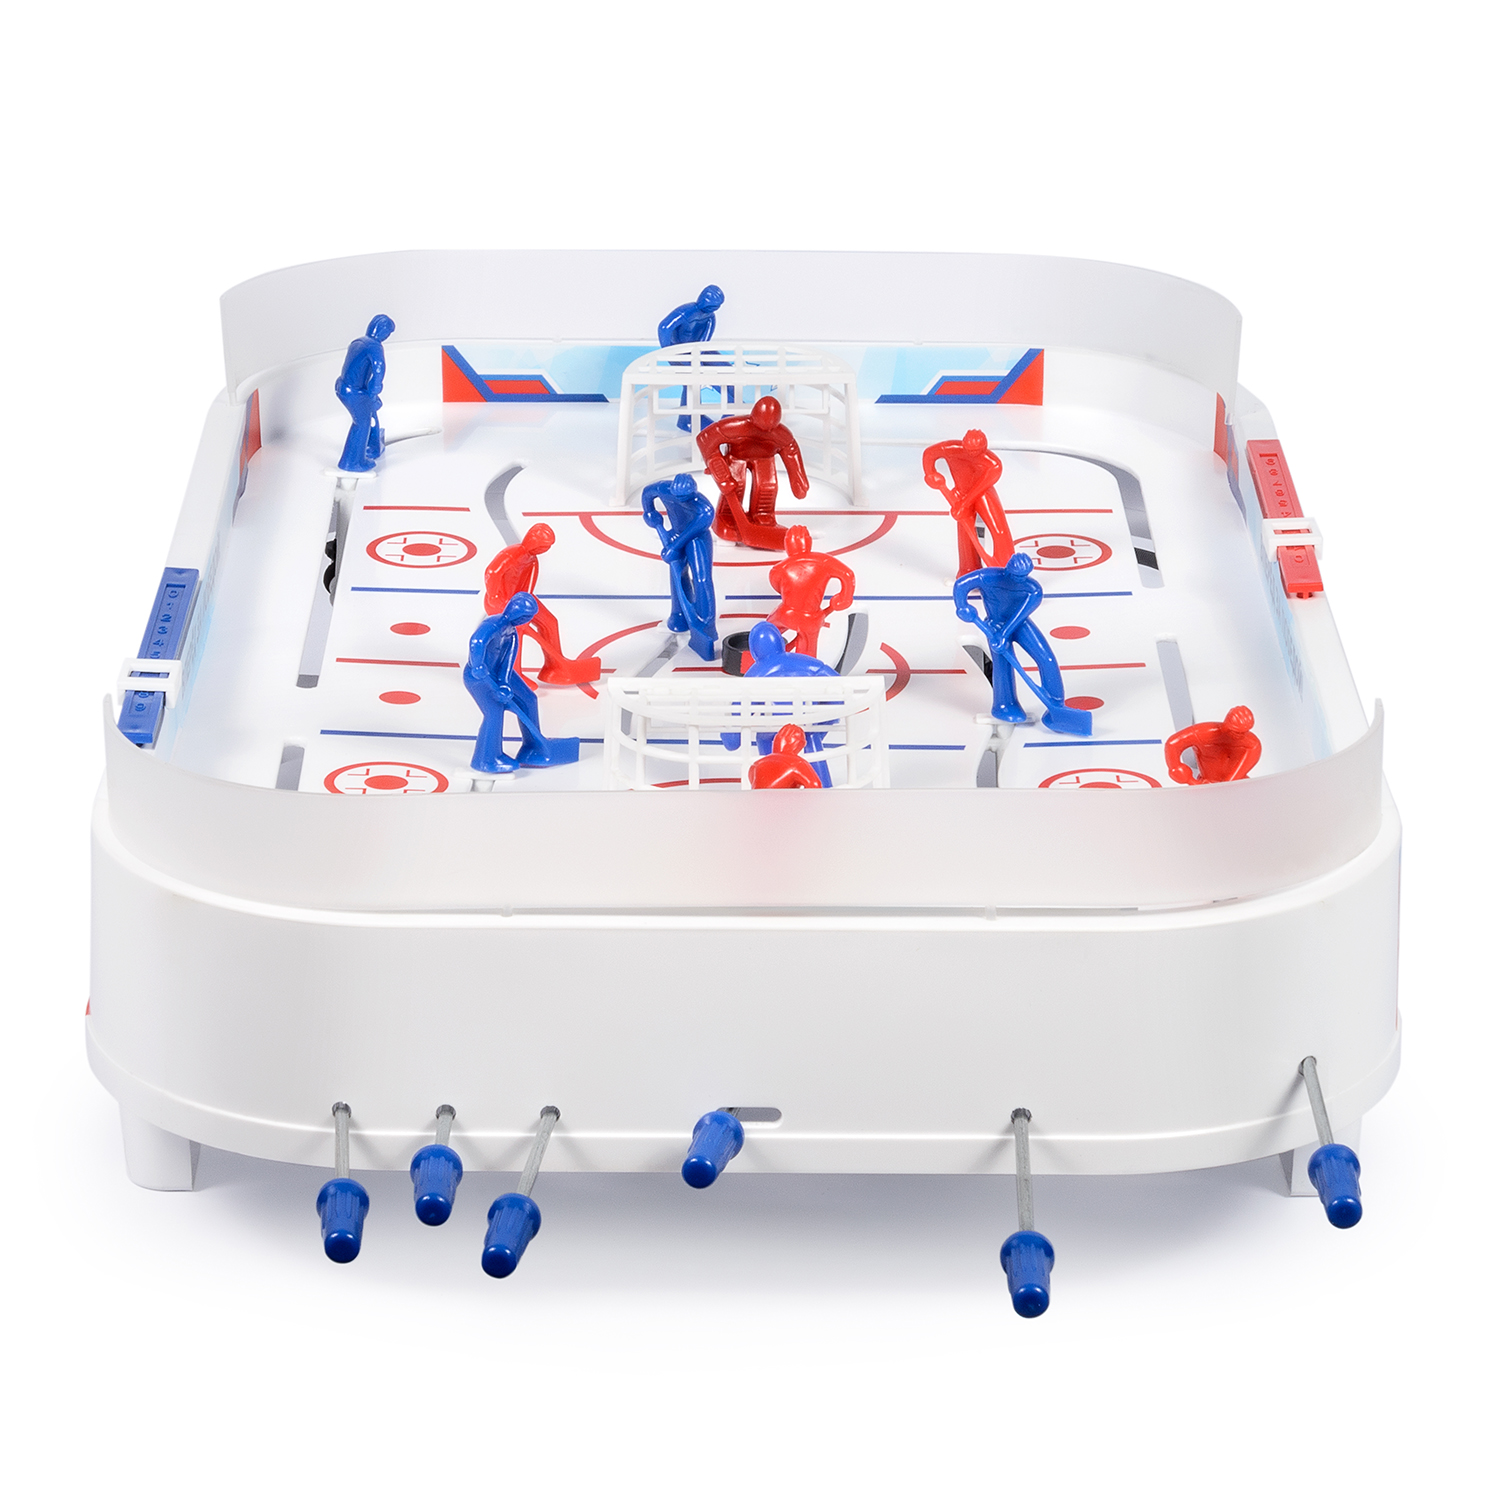 Настольный хоккей Green Plast спортивная игра в коробке для детей и компании - фото 5